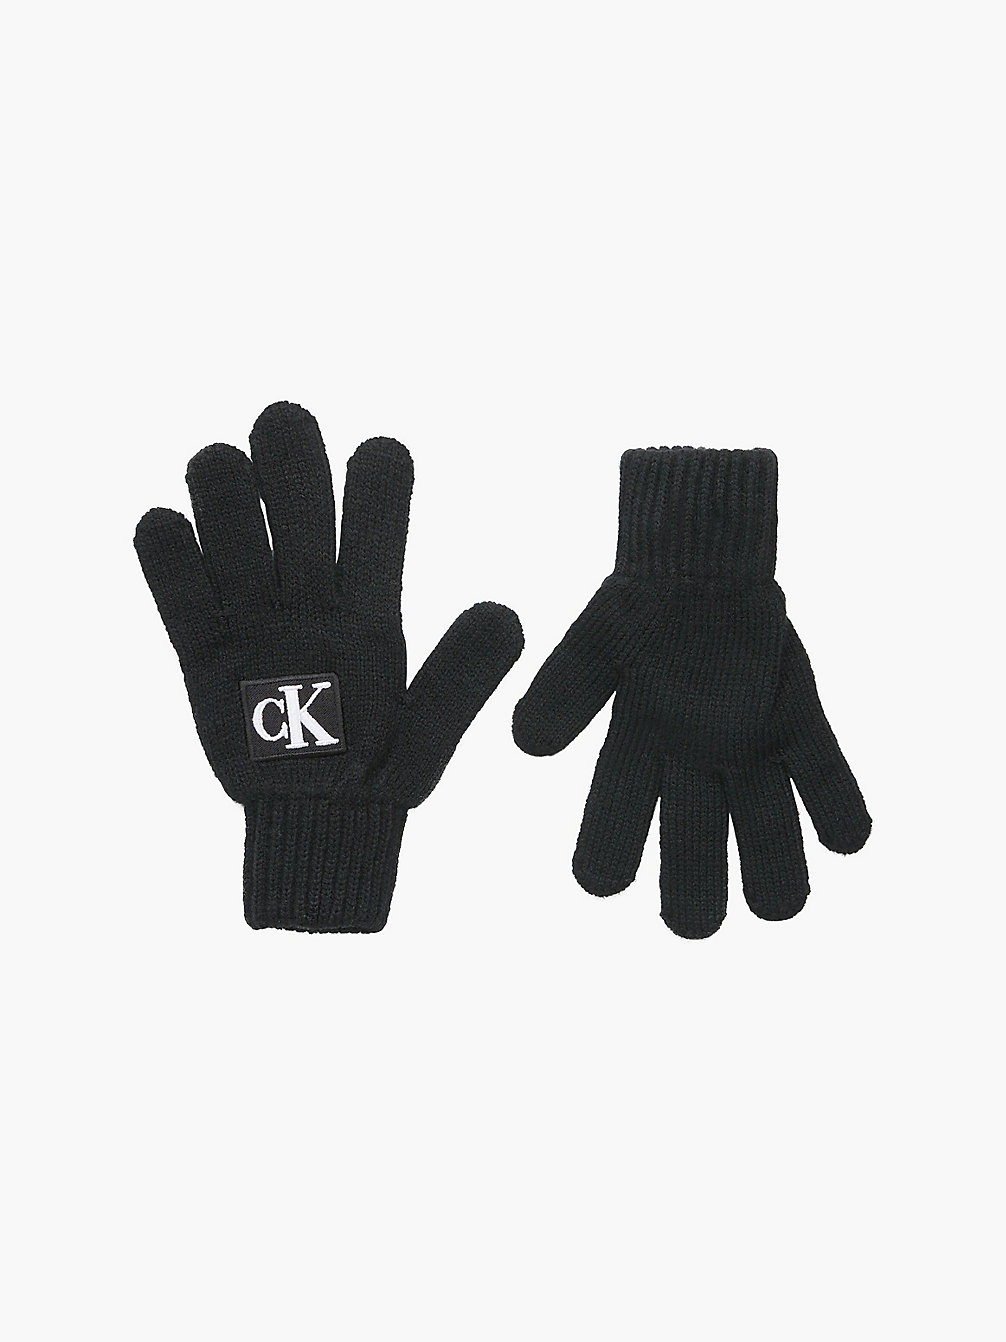 CK BLACK Unisex-Logo-Handschuhe undefined kids unisex Calvin Klein